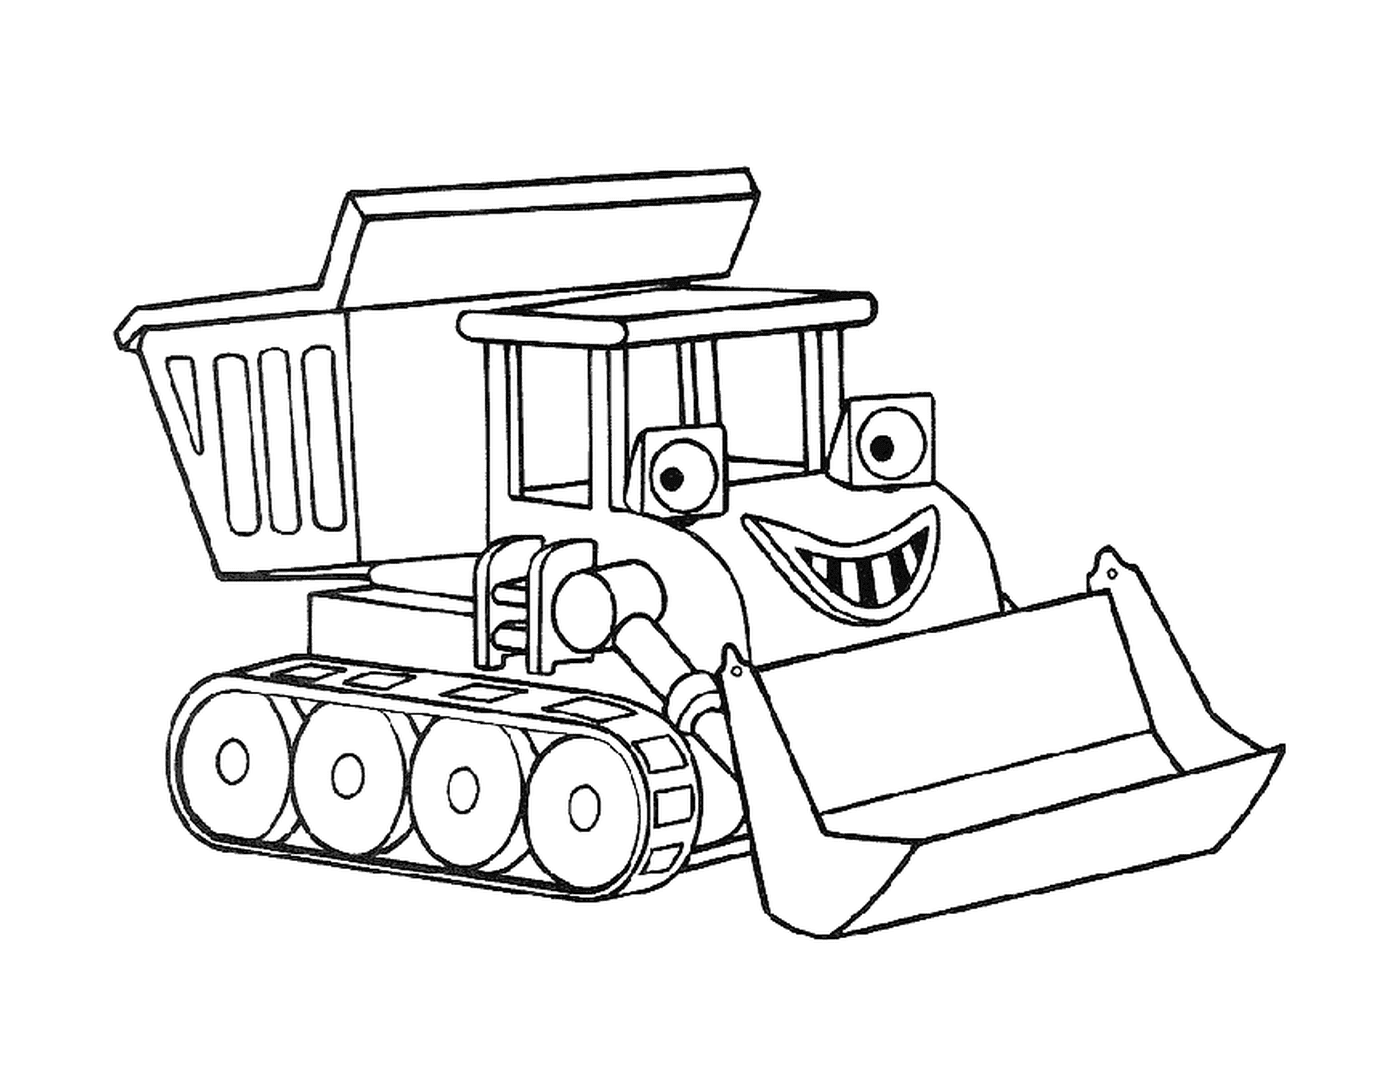  Un bulldozer dei cartoni animati 